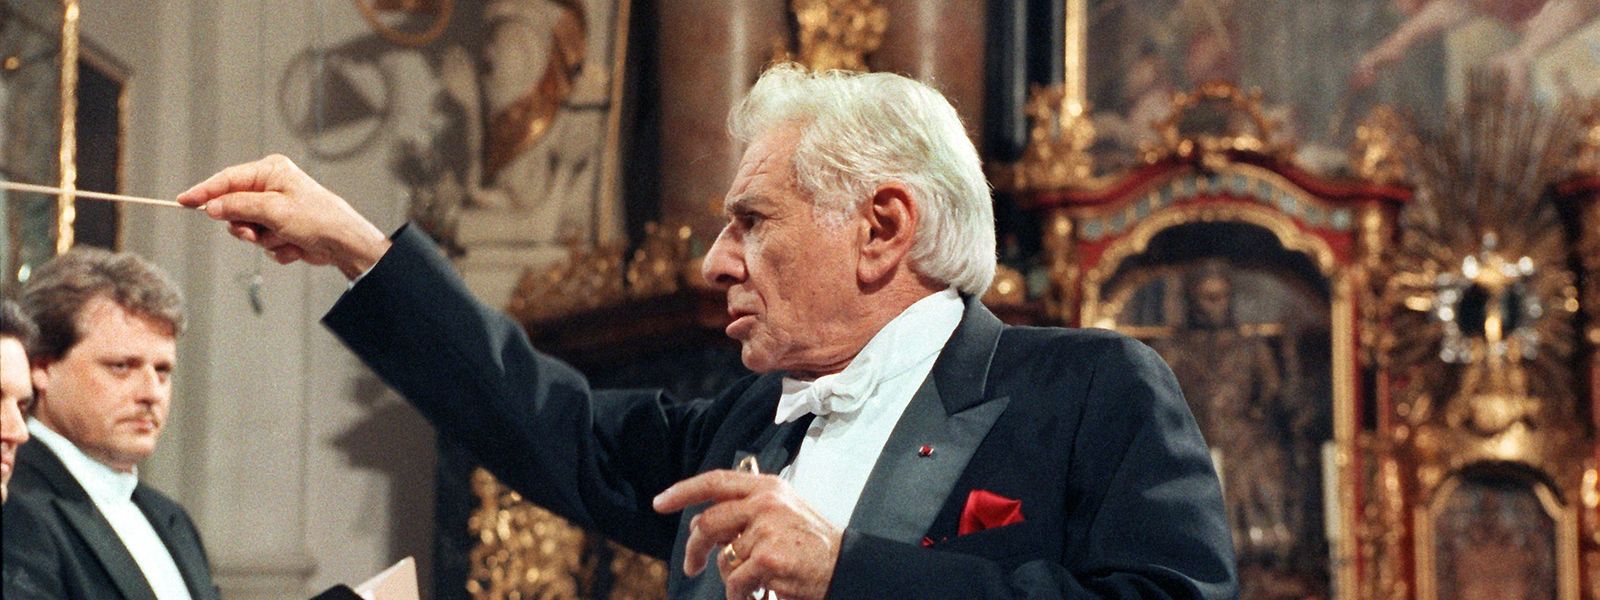 04.04.1990, Bayern, Waldassen: Leonard Bernstein dirigiert in der Basilika von Waldsassen während eines Konzertes.